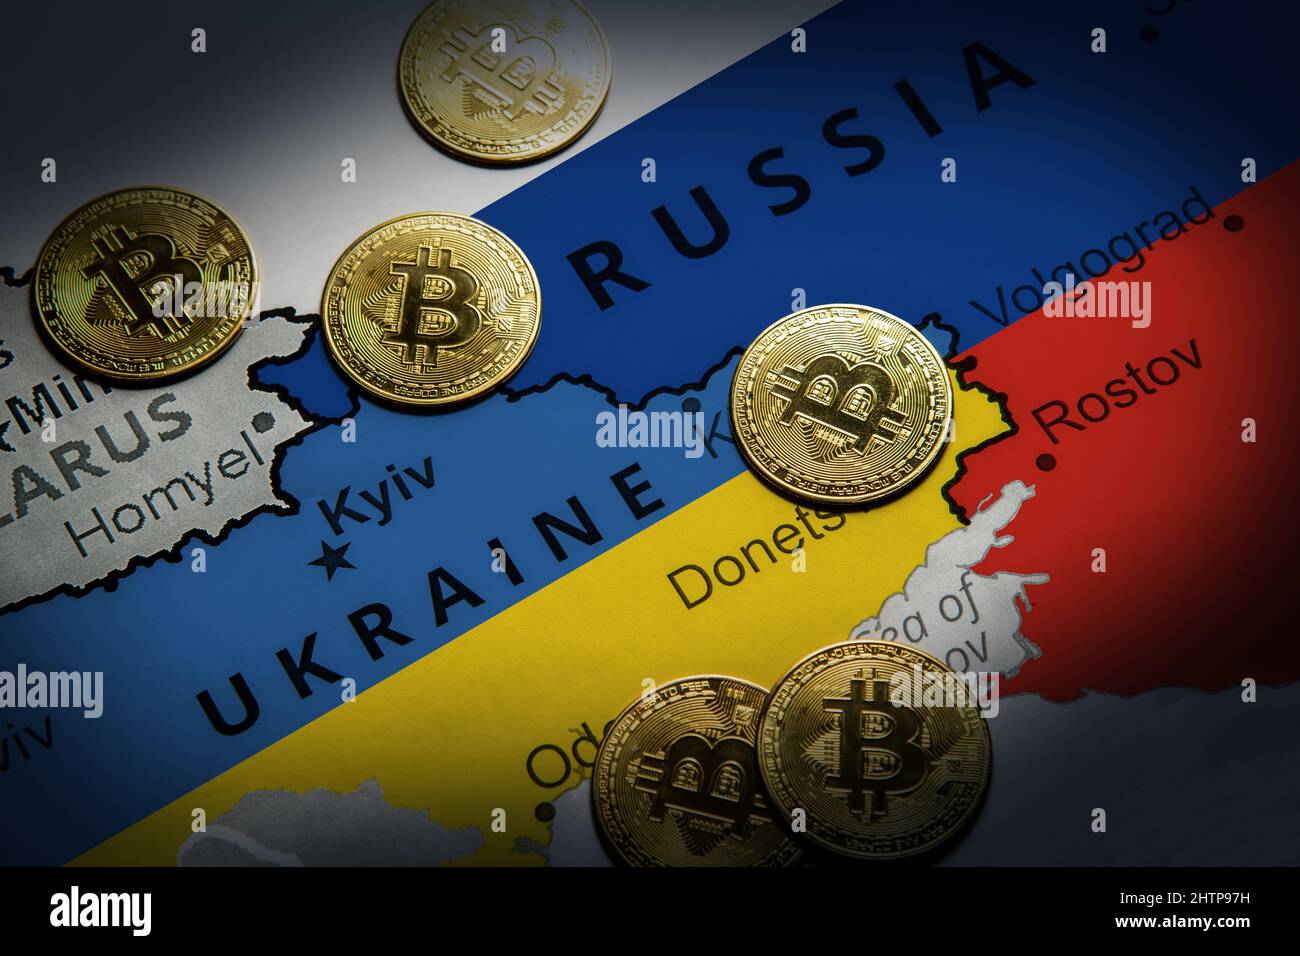 Criptomoneda en el mapa de Rusia y Ucrania. Concepto de precaución contra las sanciones financieras Foto de stock